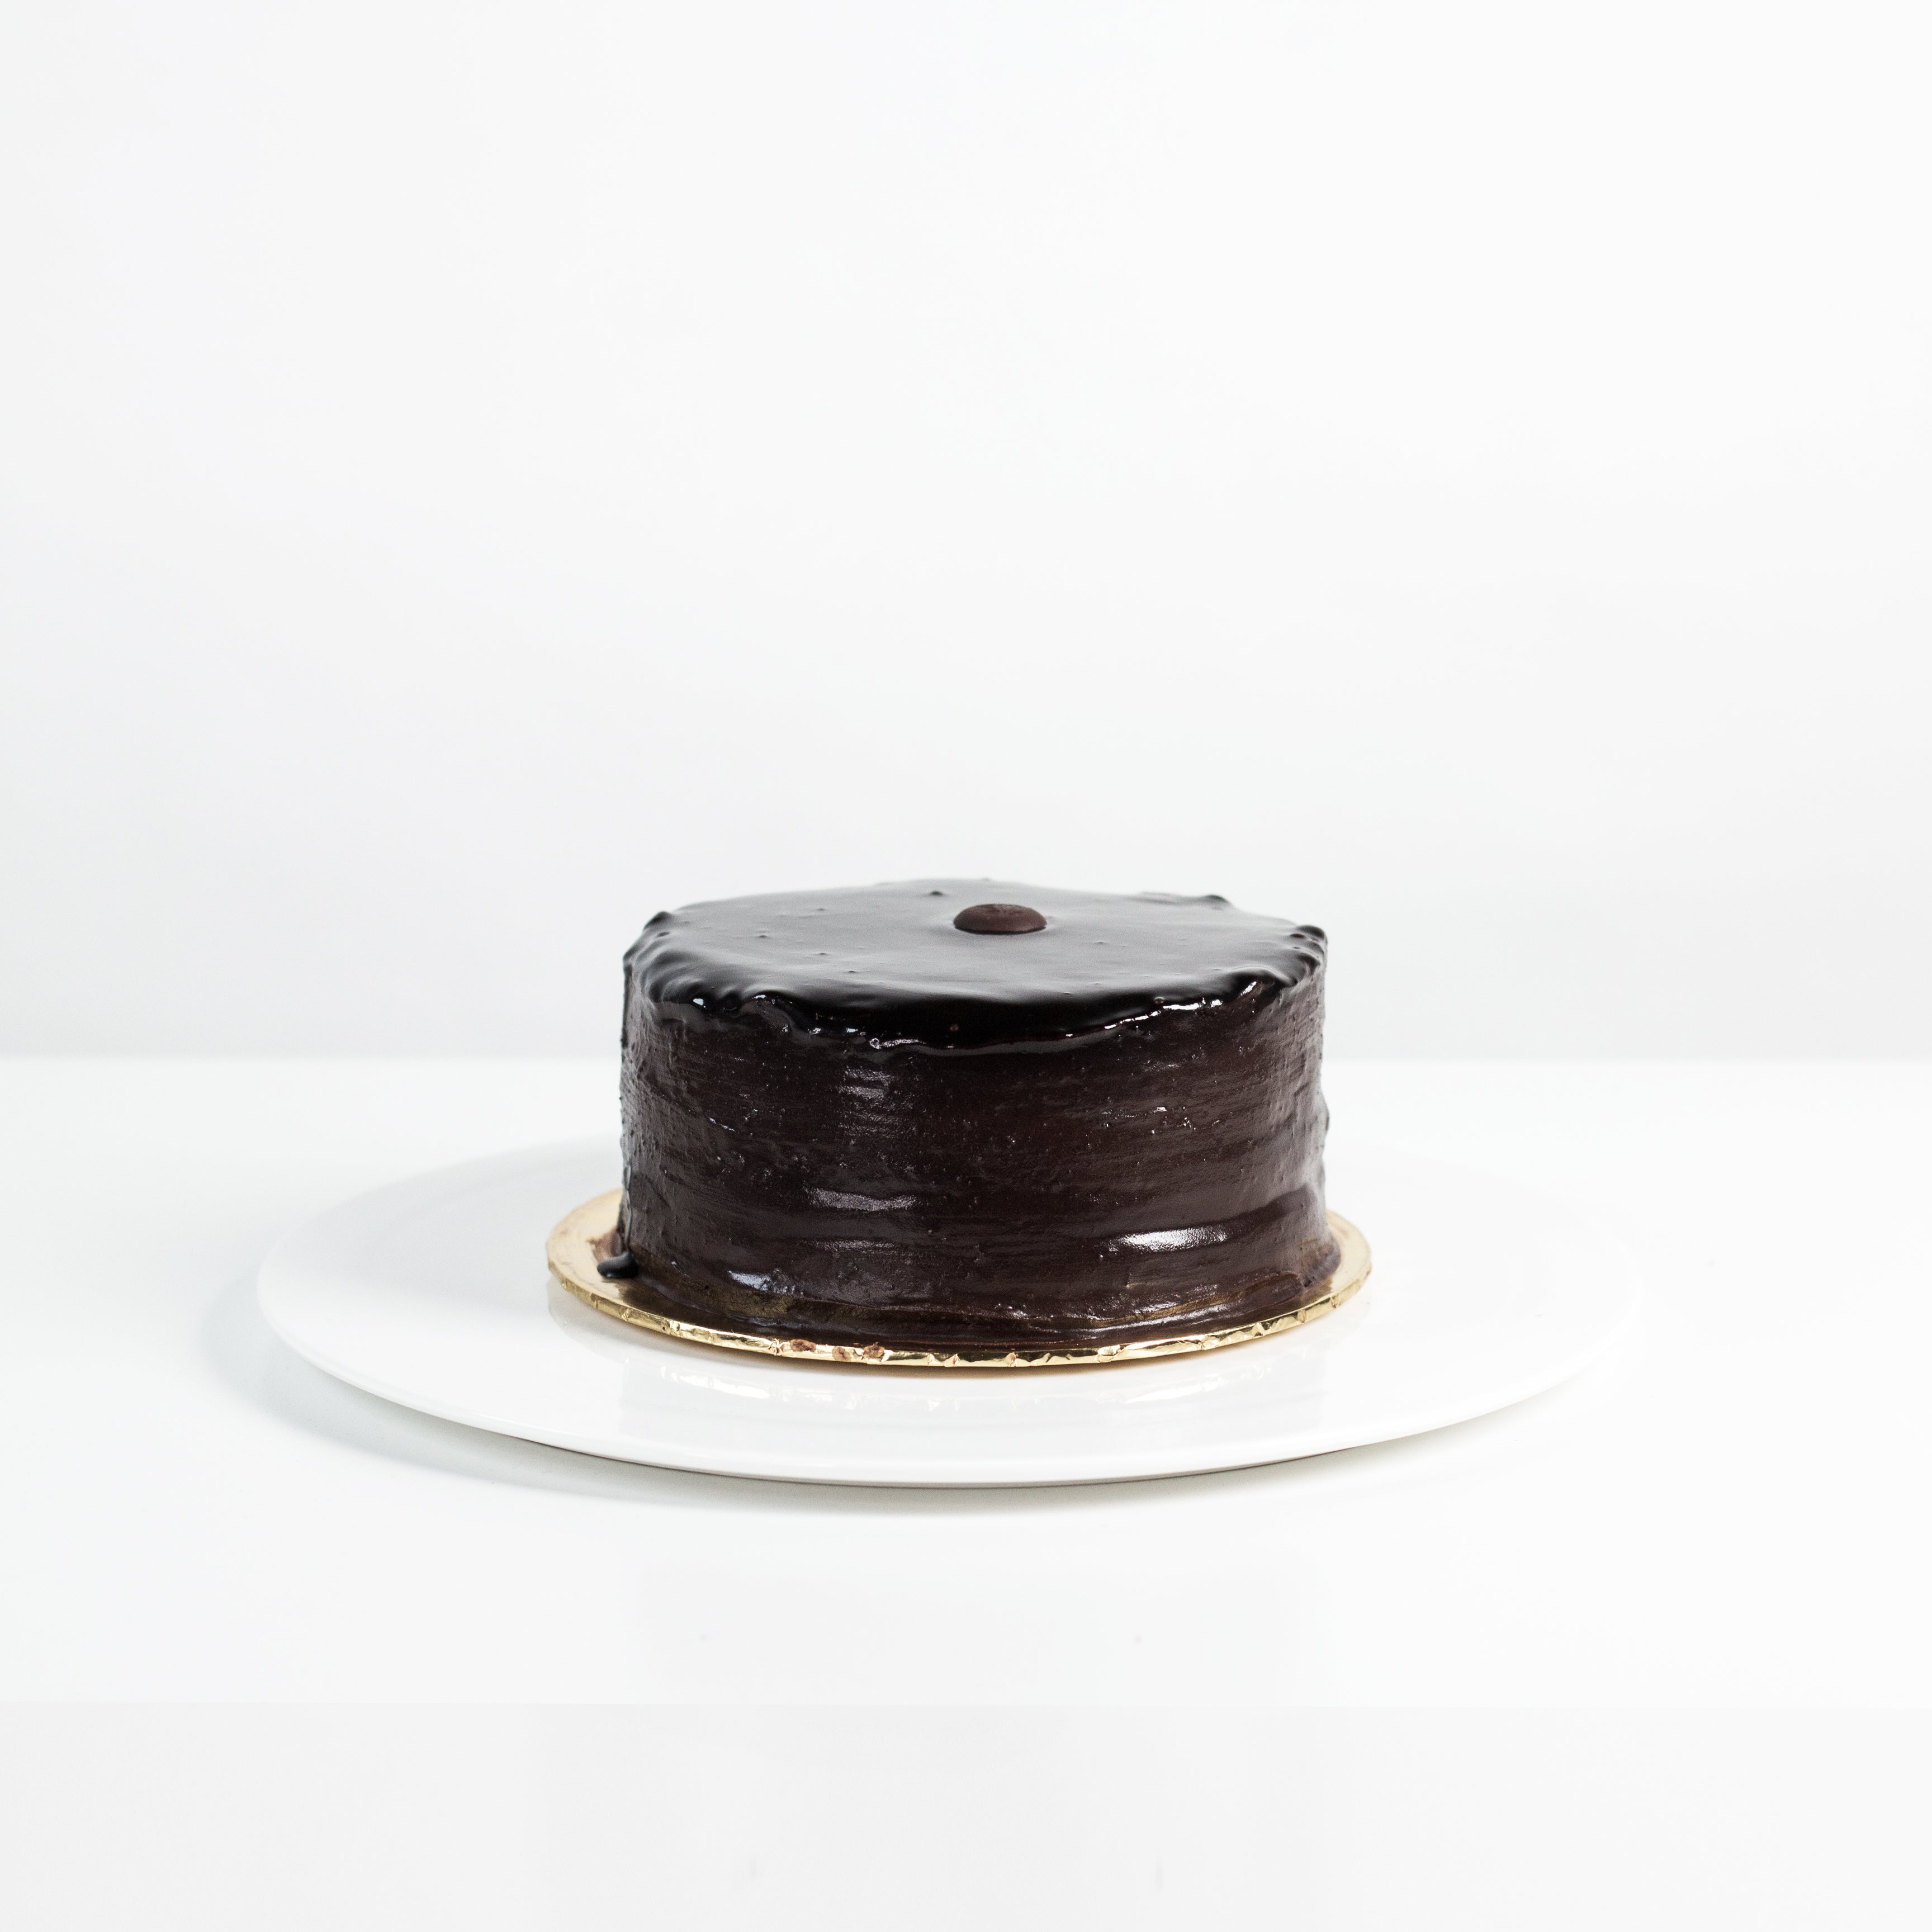 Buy Fresho Signature Belgium Chocolate Truffle Cake Online at Best Price of  Rs 399 - bigbasket